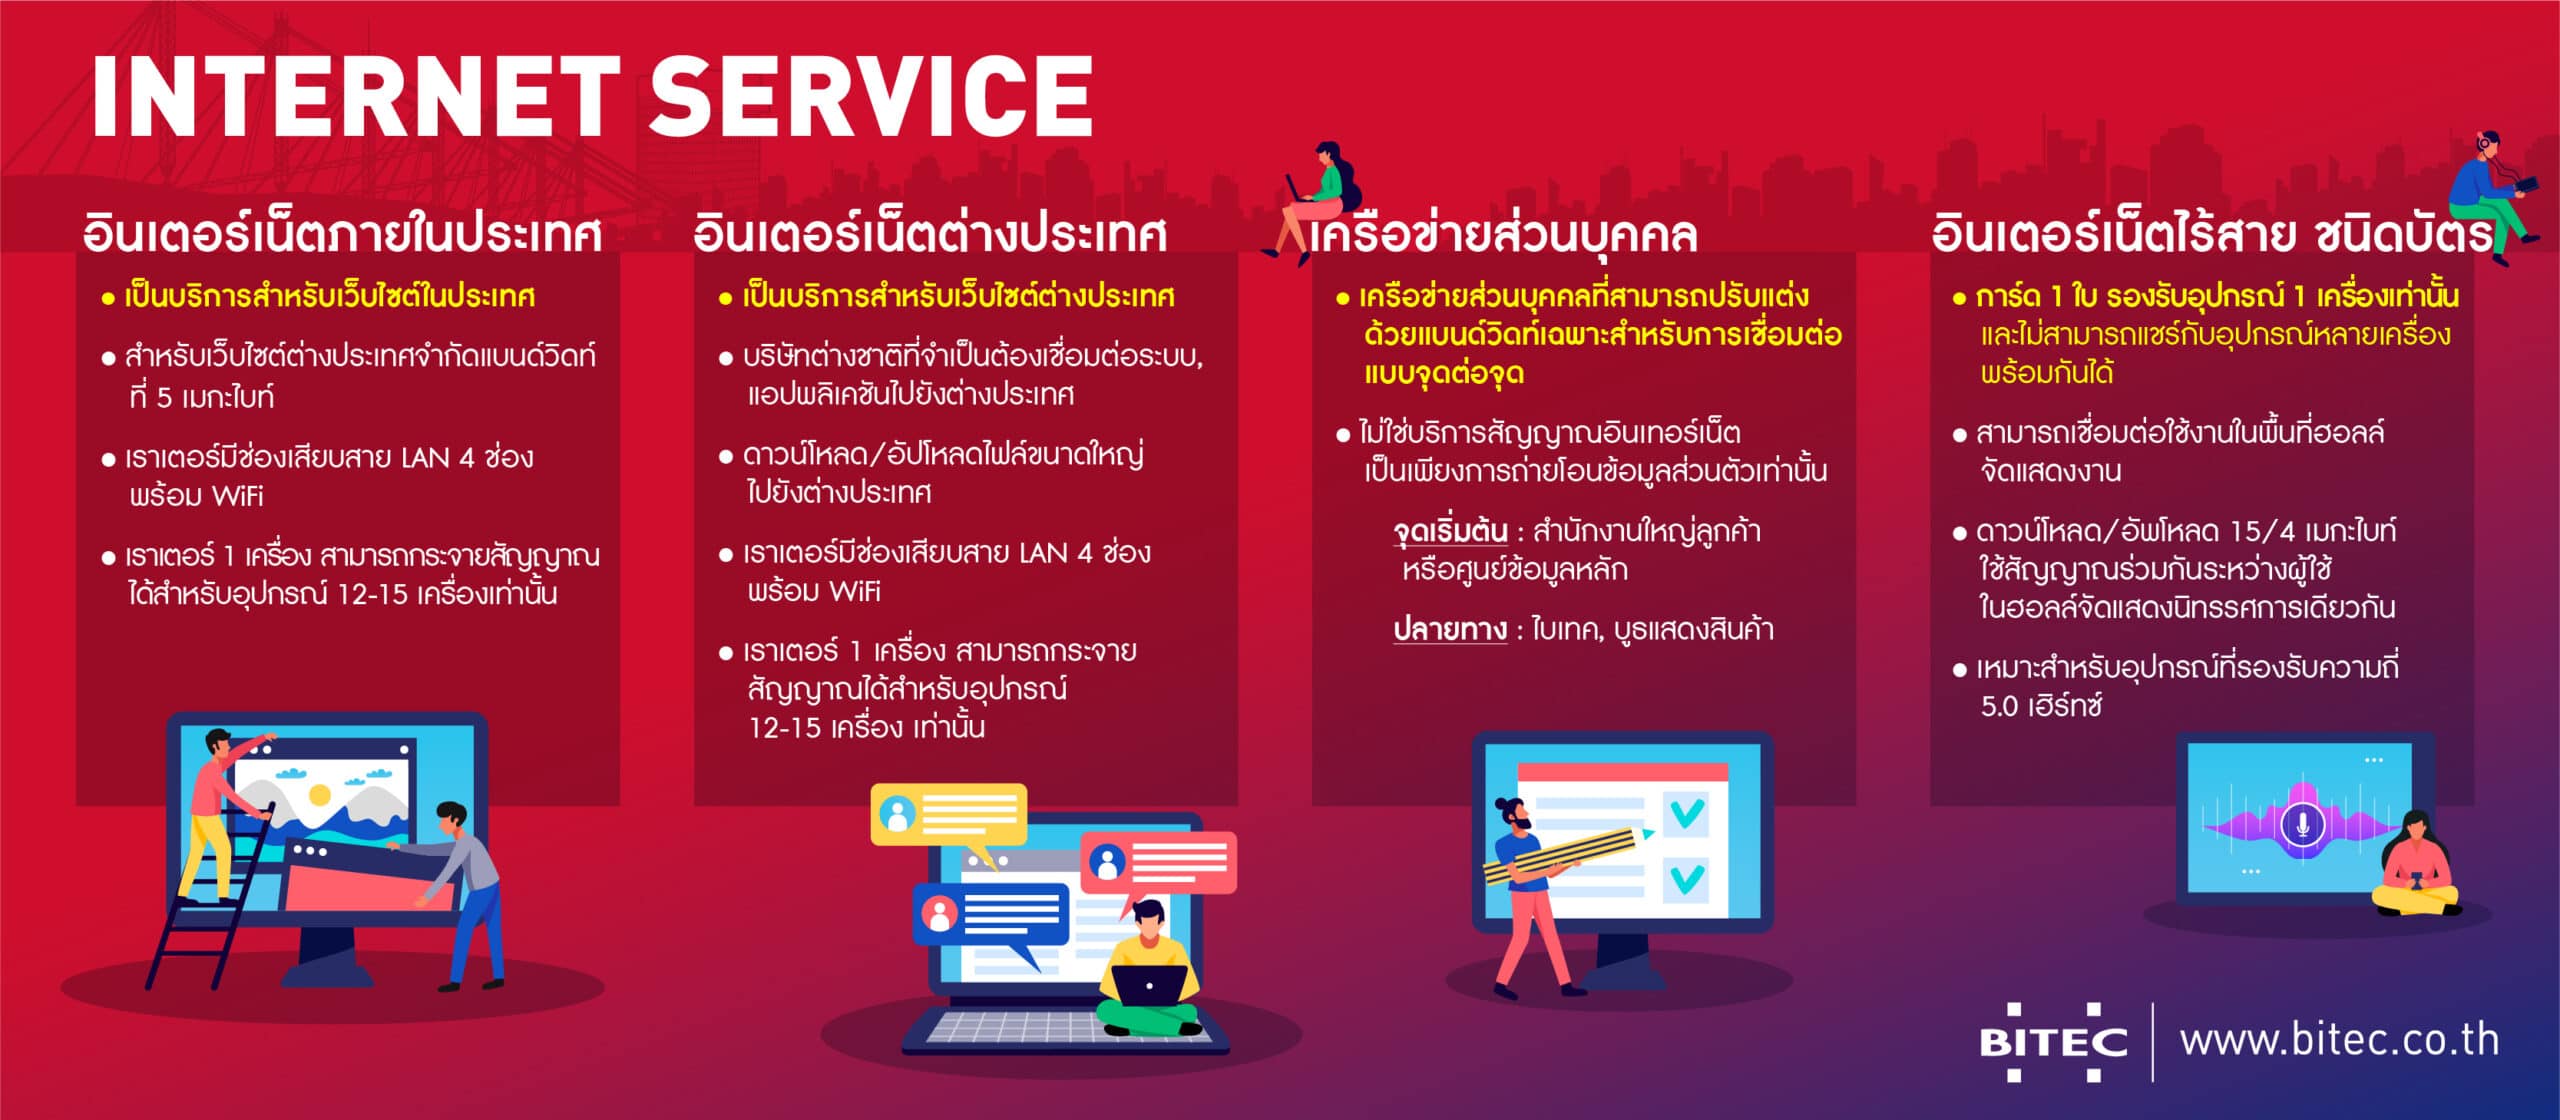 บริการอินเตอร์เน็ตสาหรับผู้ออกบูธ - Bangkok International Trade &  Exhibition Centre